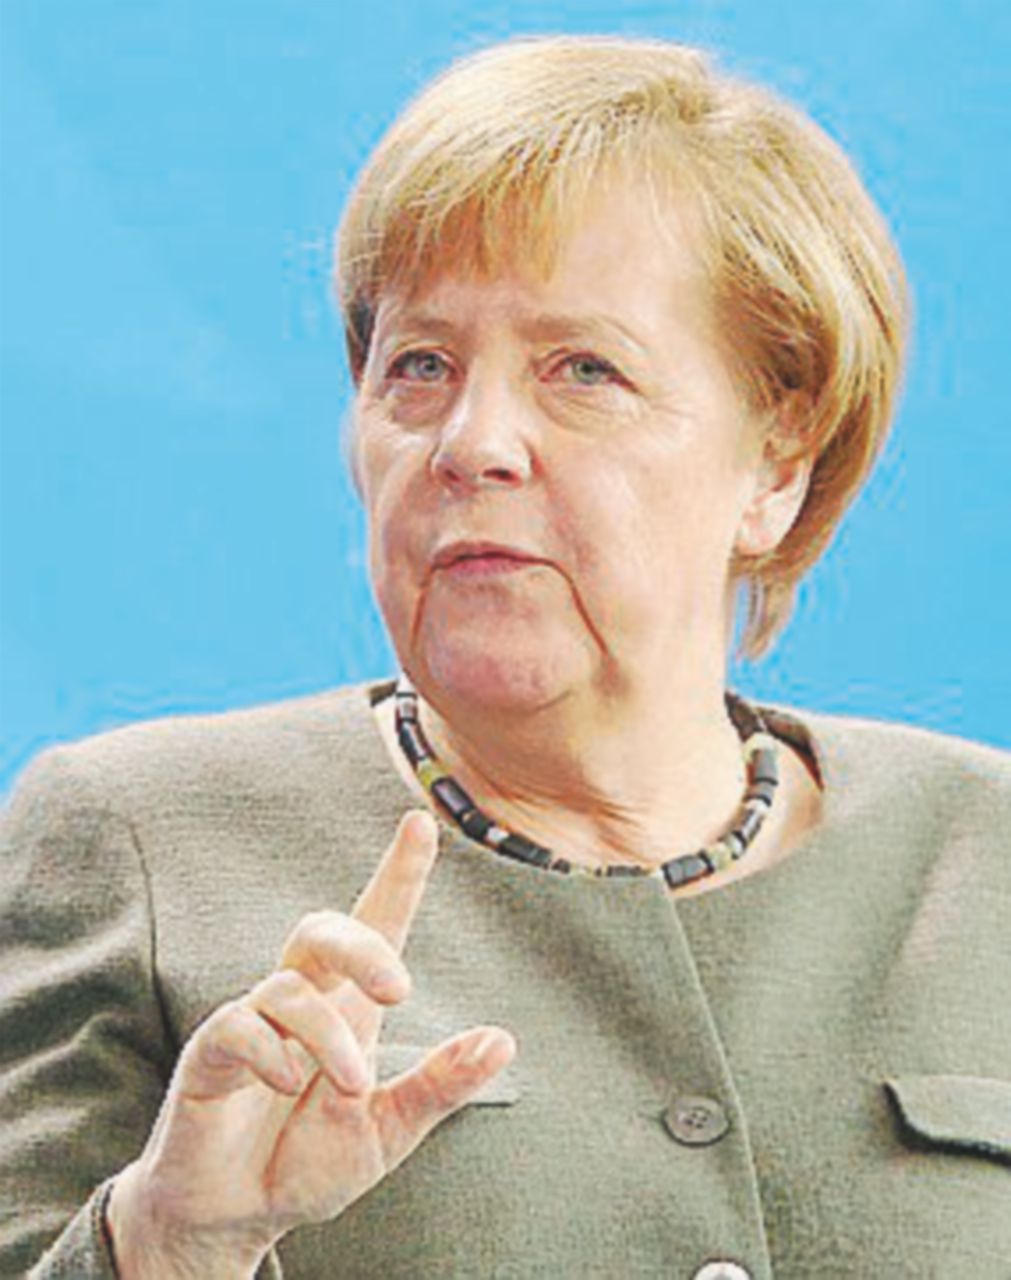 Copertina di Fusione Deutsche-Commerz, i dubbi della vigilanza della Bce. La Merkel smentisce sul ruolo del governo